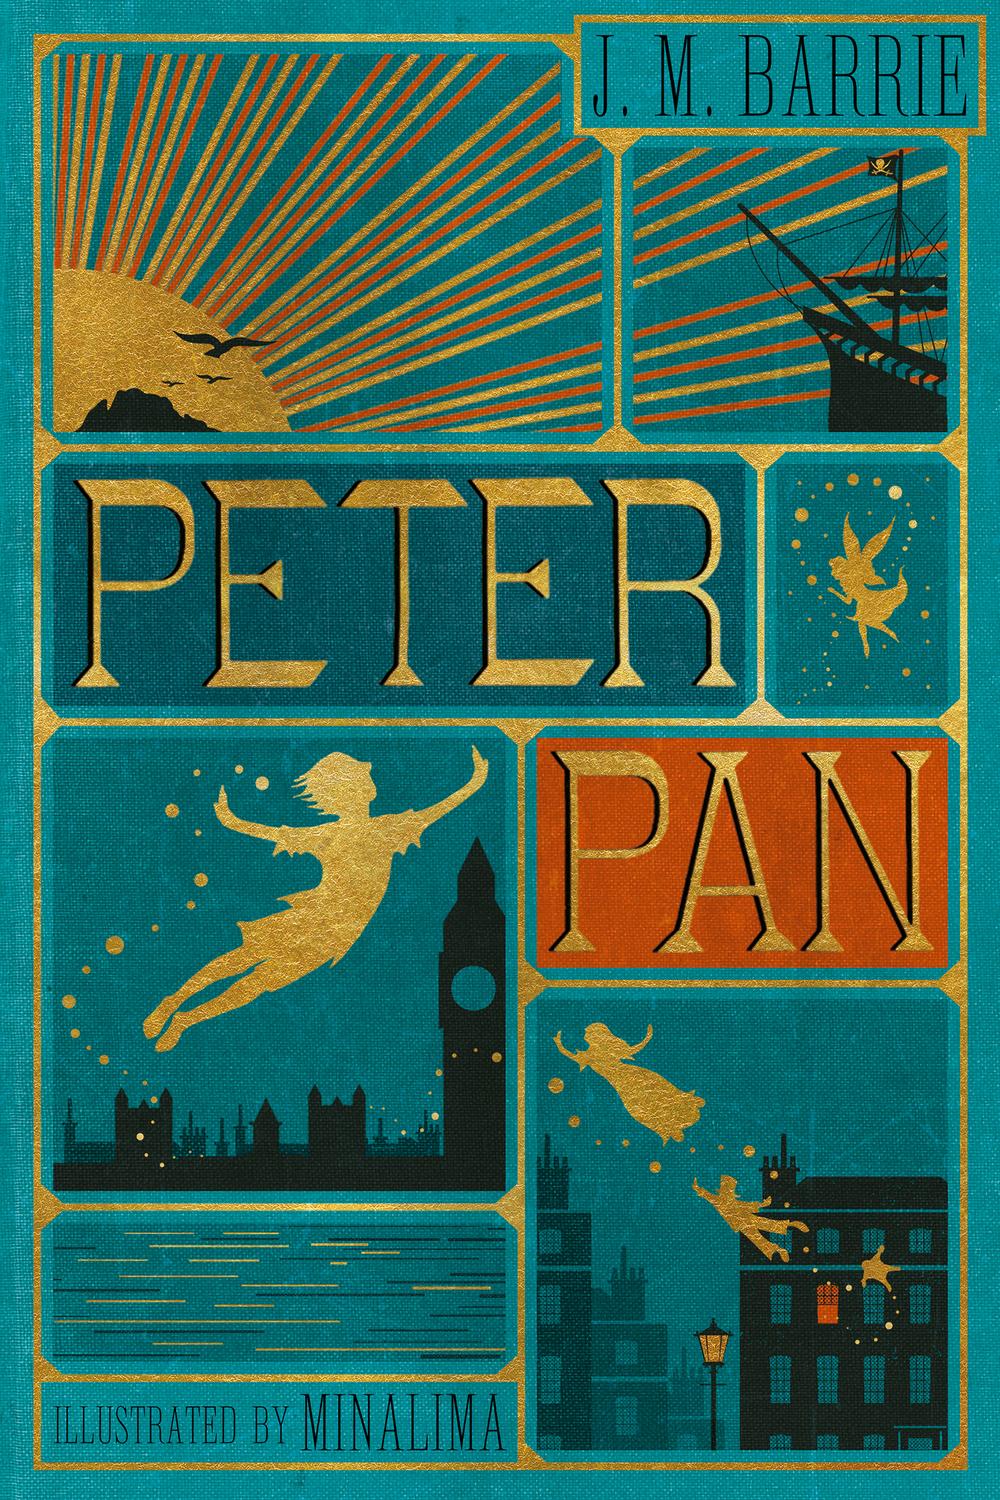 Peter Pan - J. M. Barrie, MinaLima Ltd.